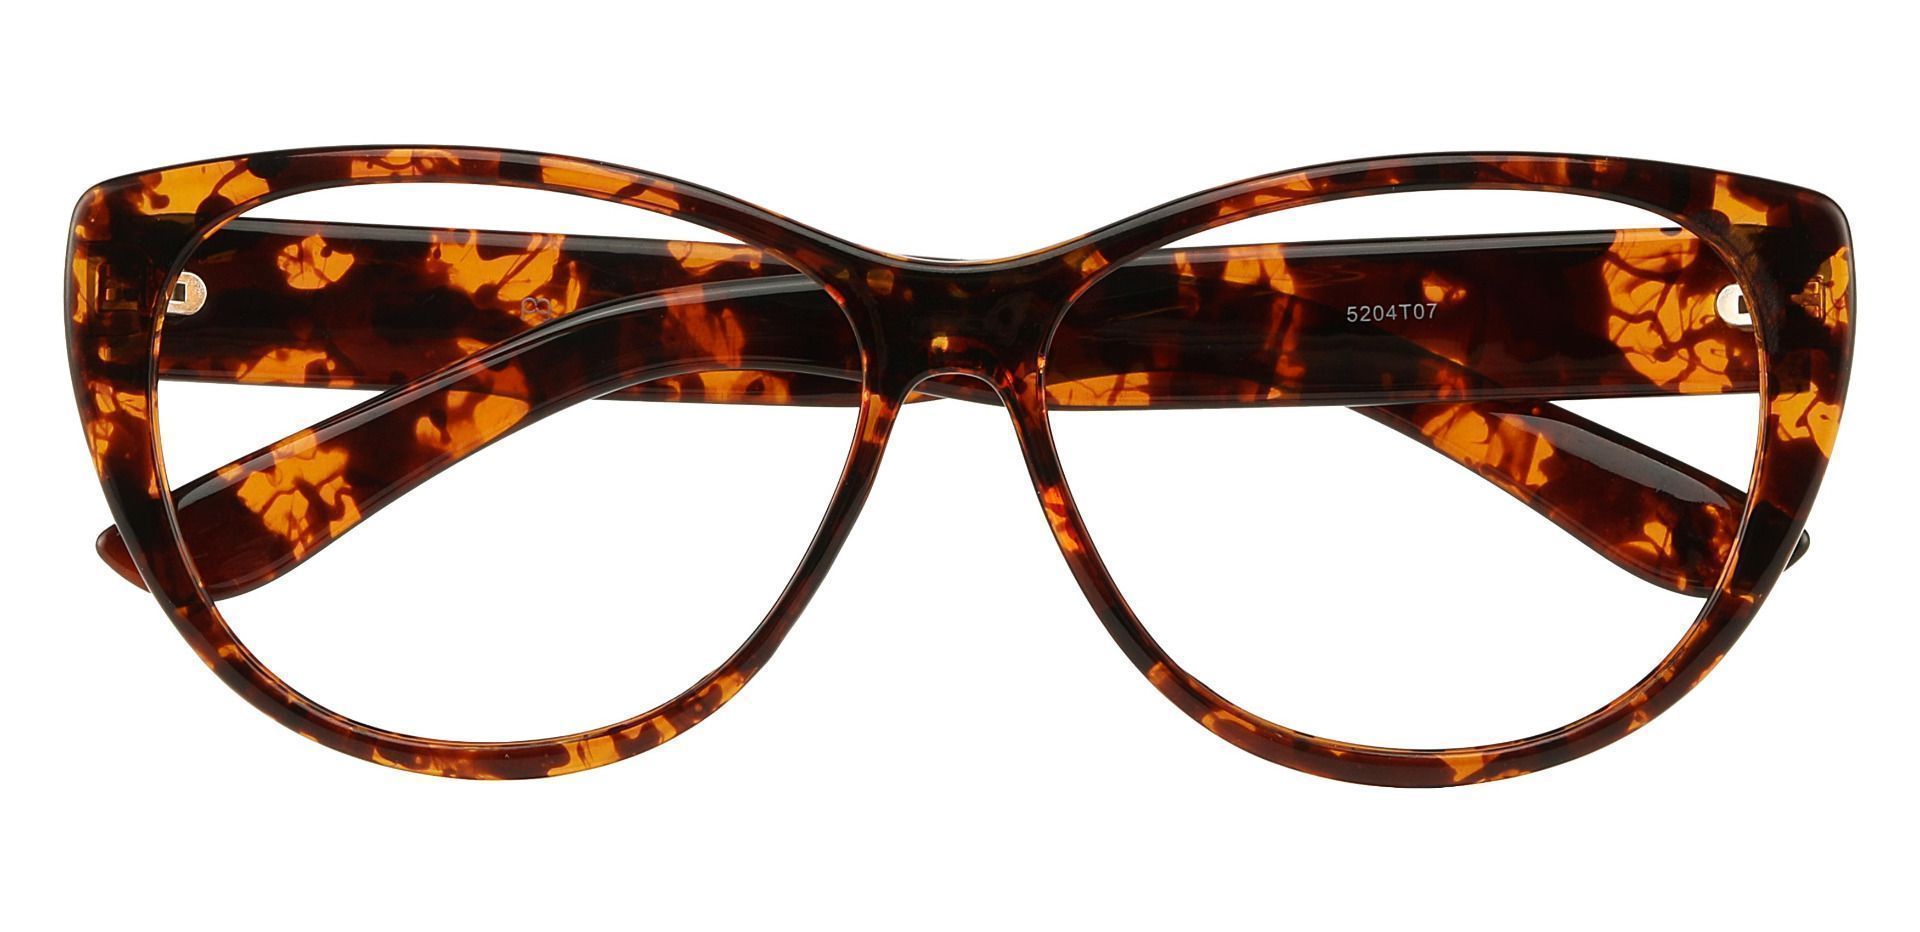 Lynn Cat-Eye Lined Bifocal Glasses - Tortoiseshell